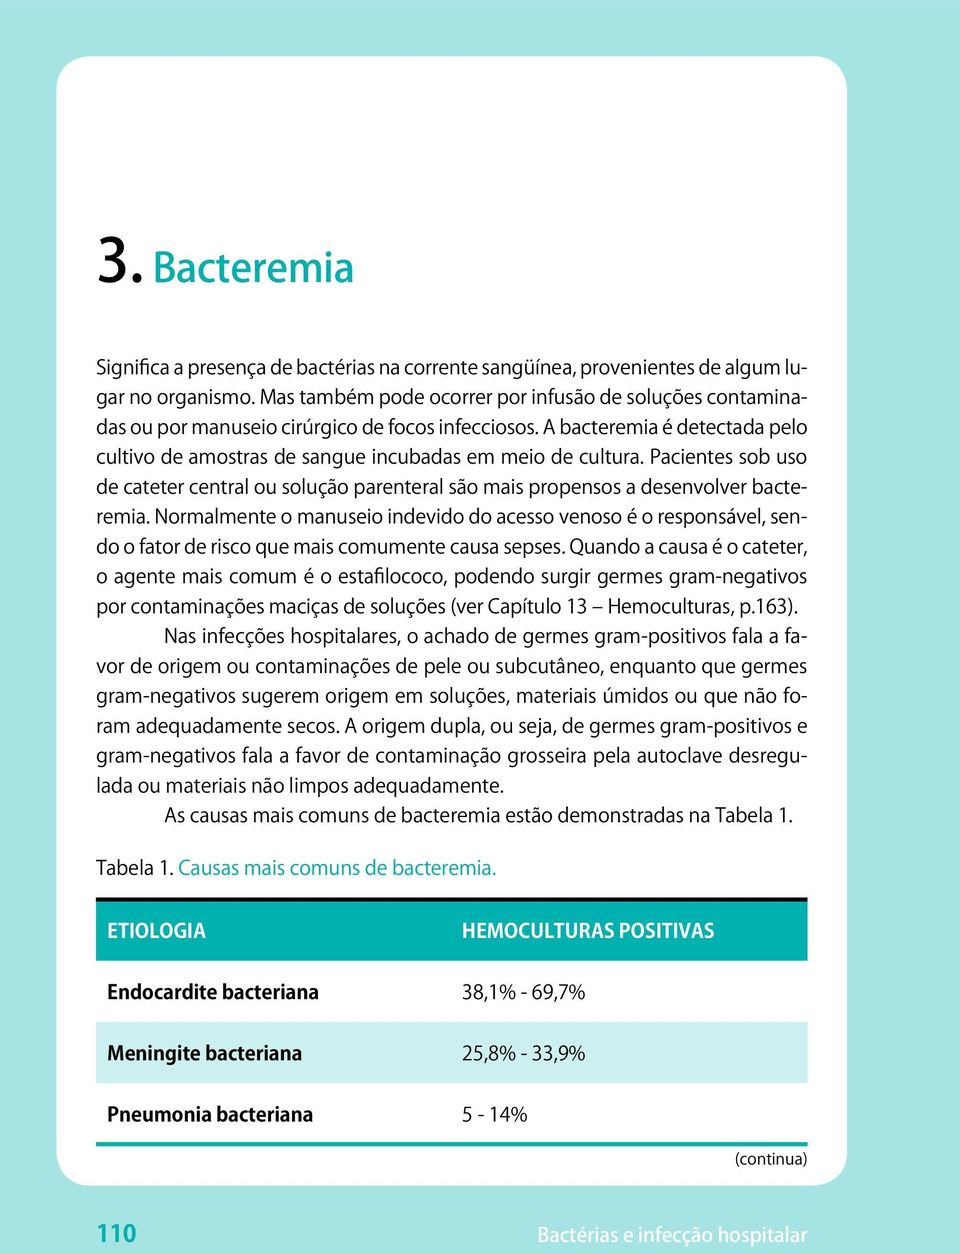 Pacientes sob uso de cateter central ou solução parenteral são mais propensos a desenvolver bacteremia.